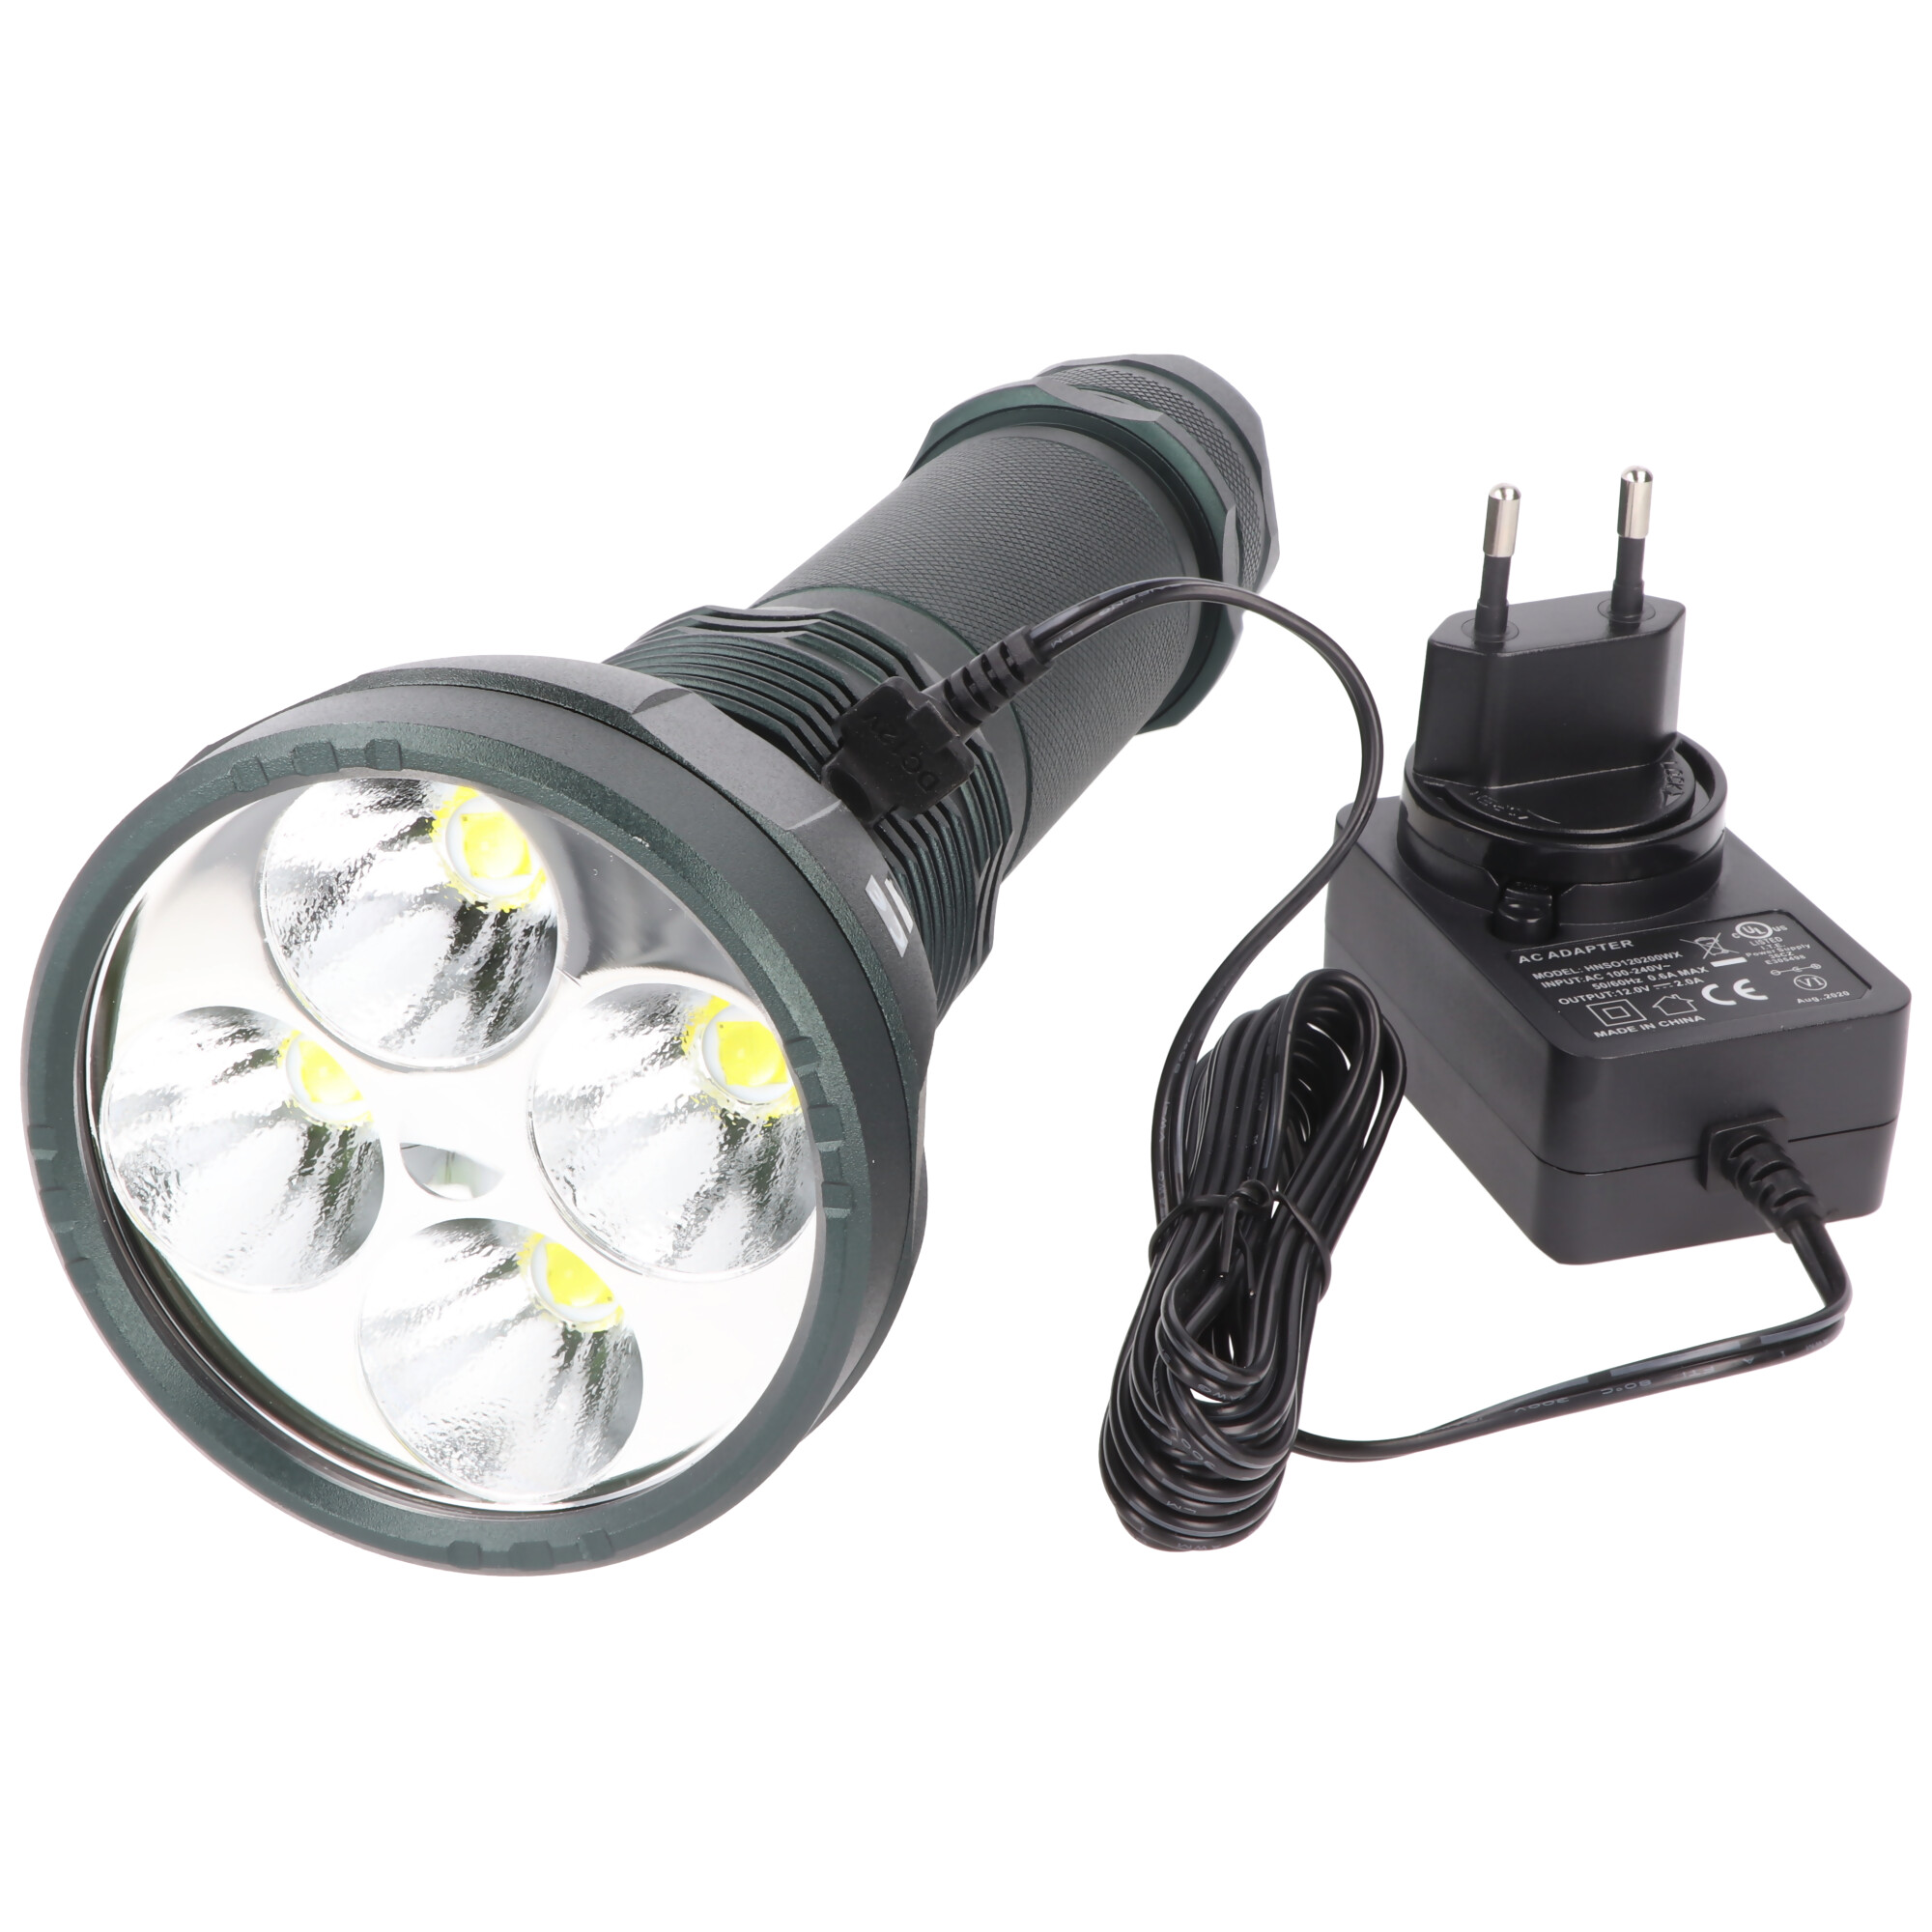 11600 Lumen LED Taschenlampe, die LED-Stabtaschenlampe ideal für Jagd und Hobby mit bis zu 525 Meter Leuchtweite